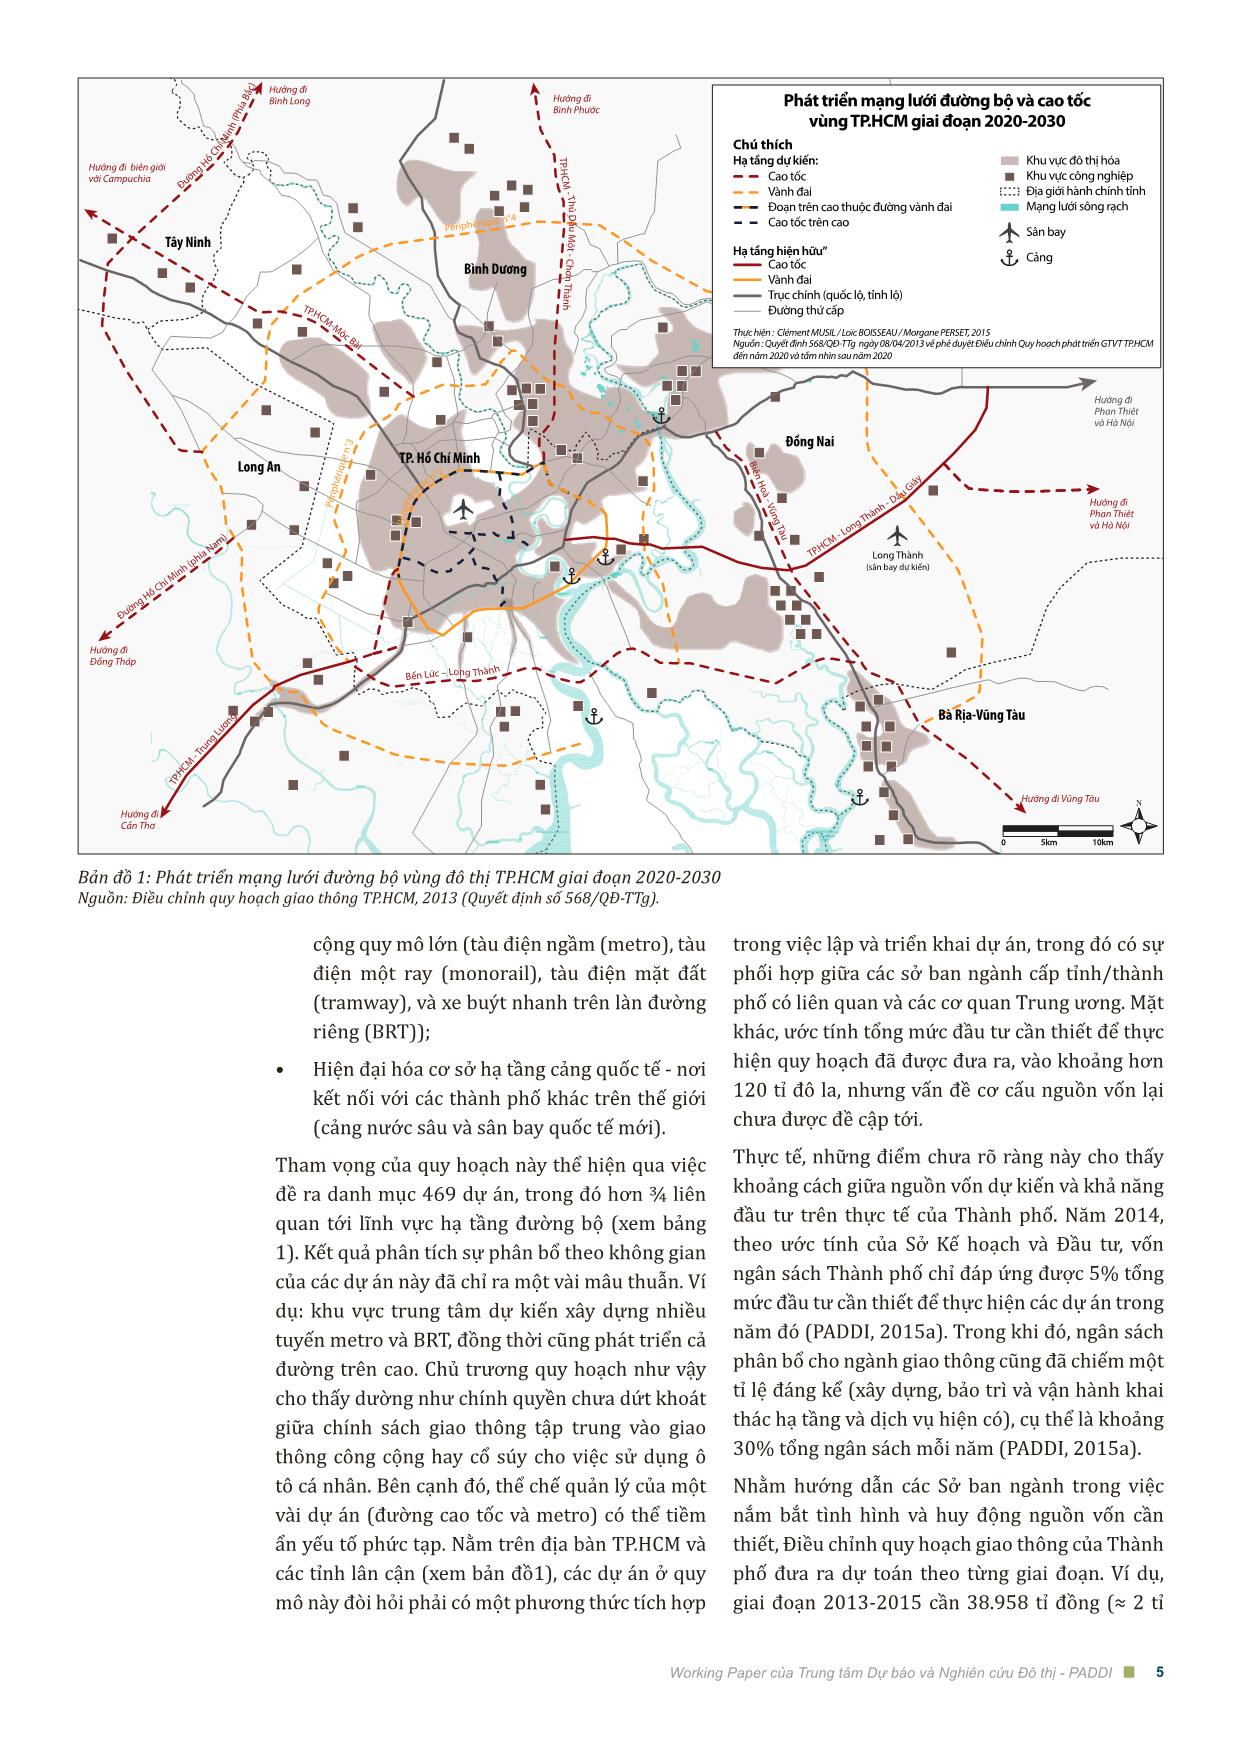 Đầu tư cơ sở hạ tầng giao thông tại thành phố Hồ Chí Minh công cụ, đổi mới và thách thức trang 5